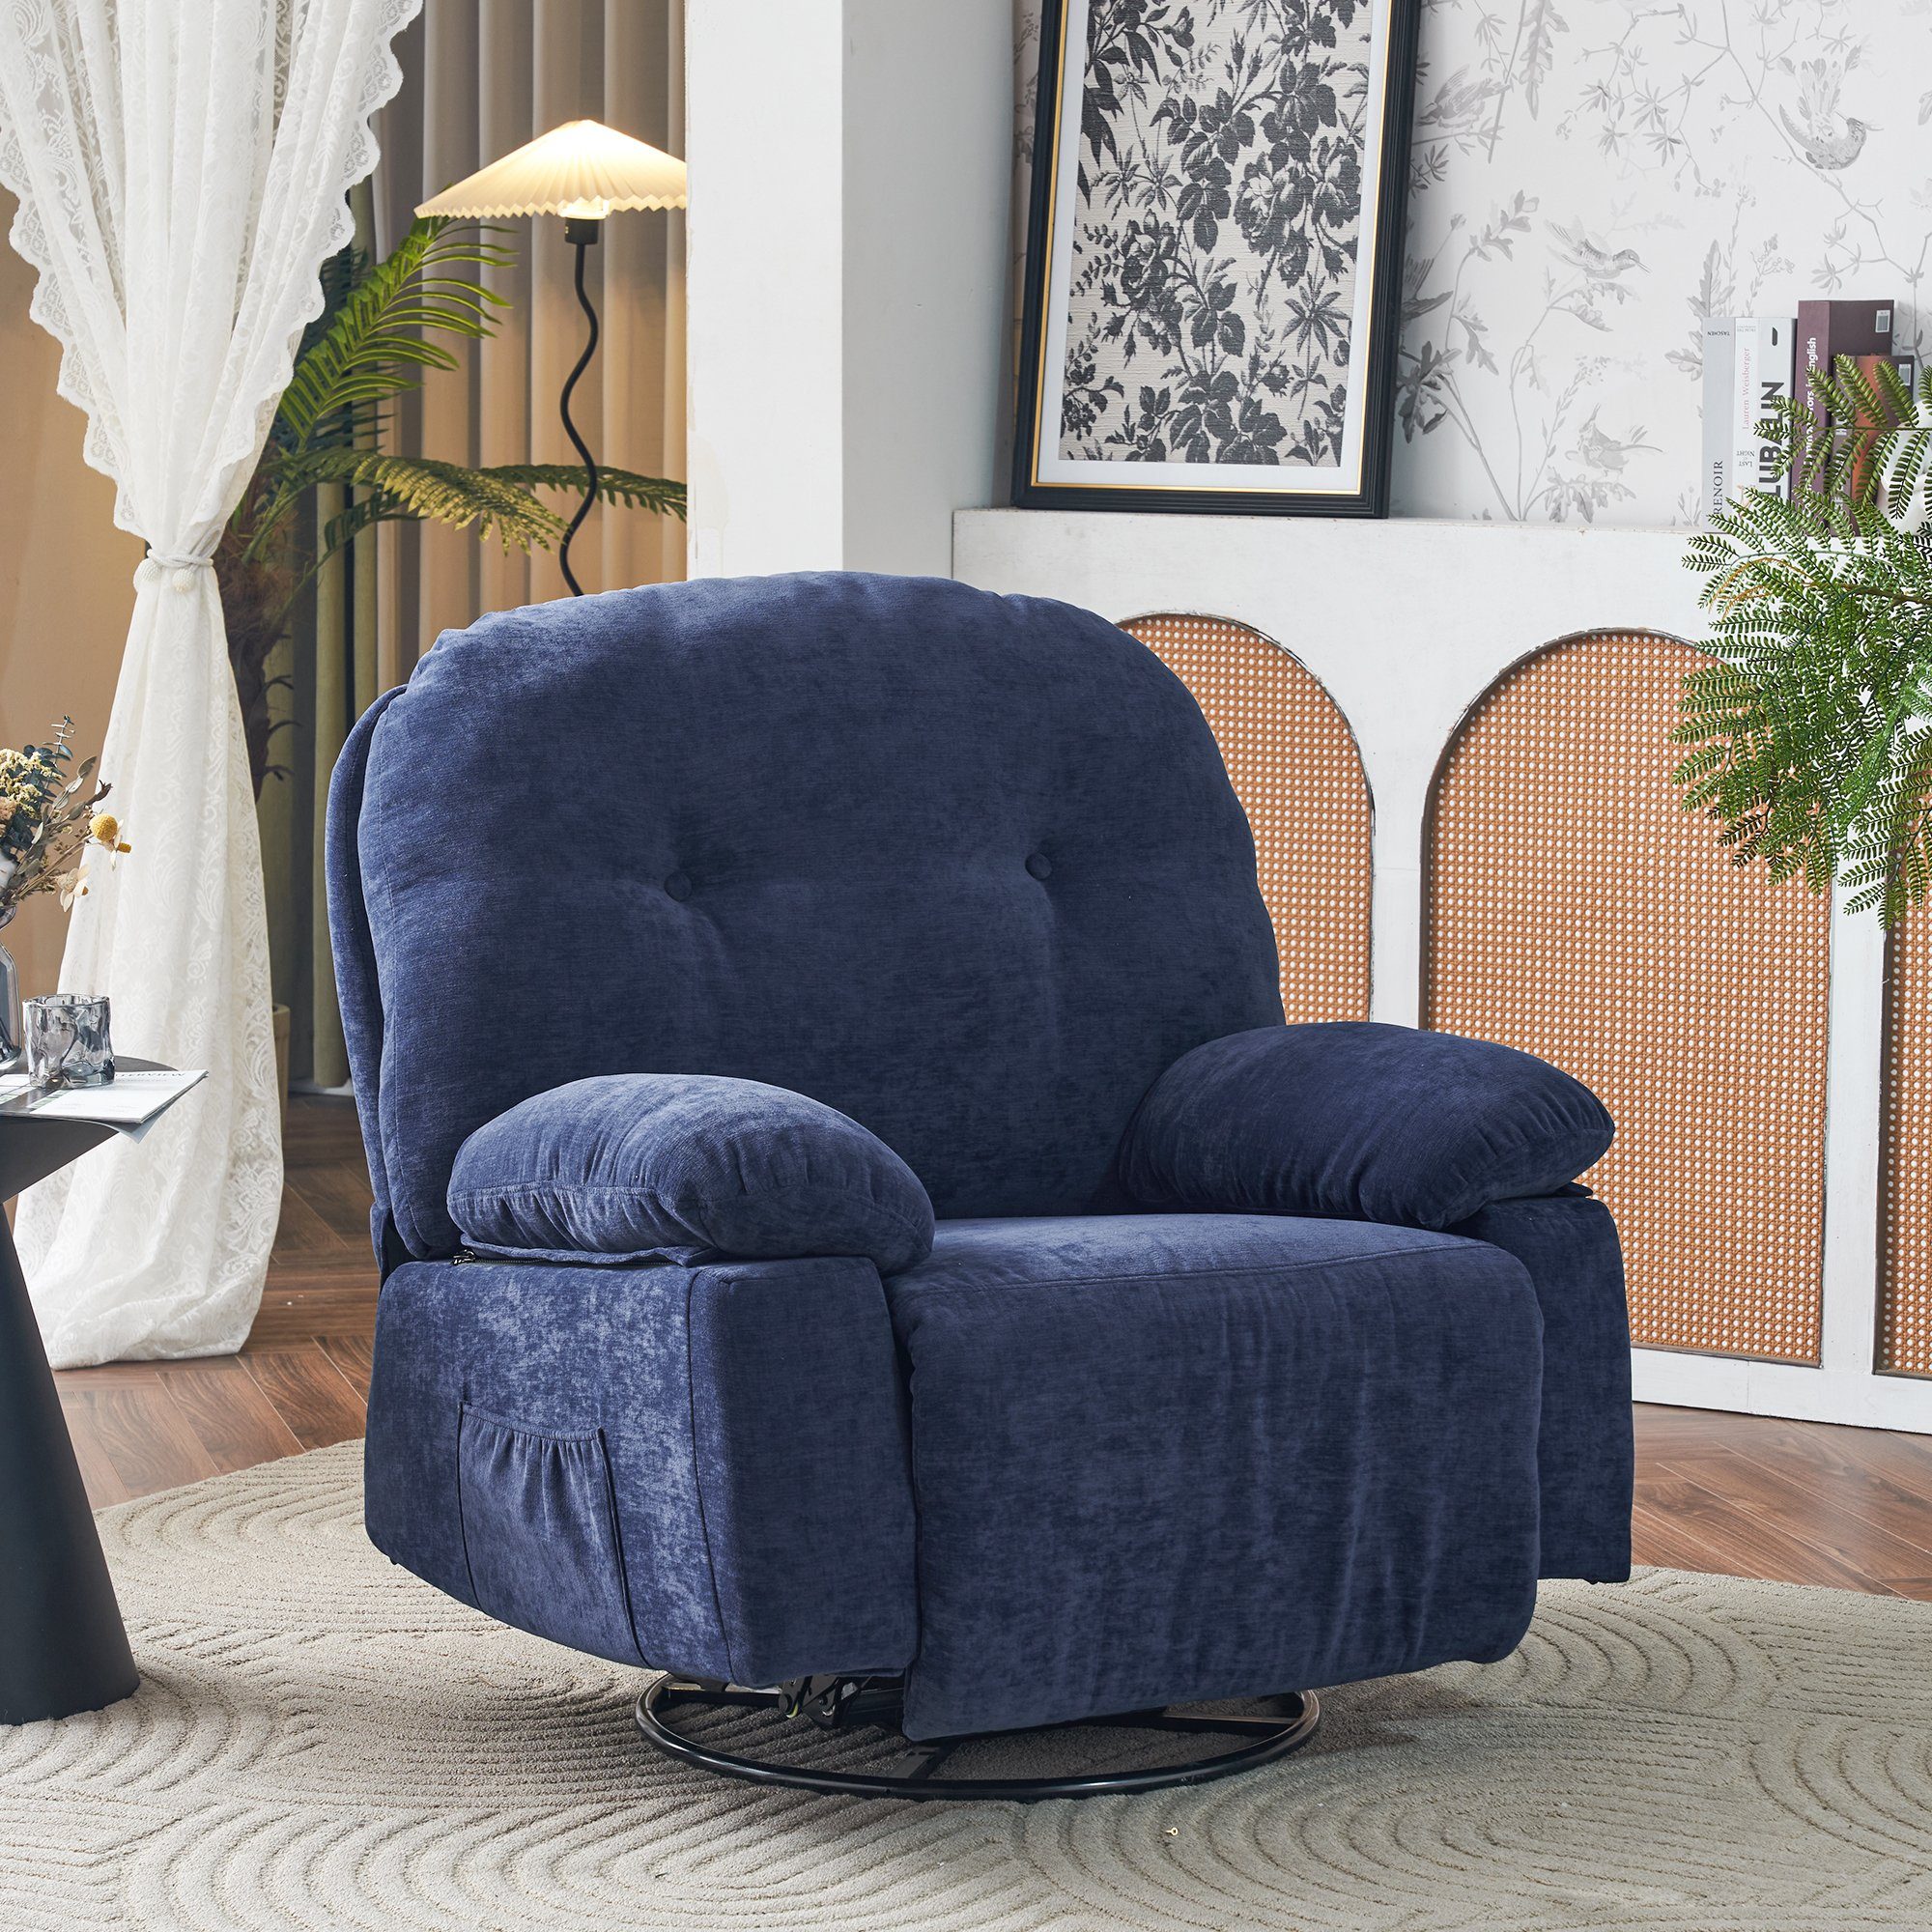 Merax TV-Sessel mit mit Relaxsessel Blau 360° Drehfunktion und mit Massagessel Wärmefunktion, Fernbedienung, und elektrisch Fernsehsessel Timer, Vibration